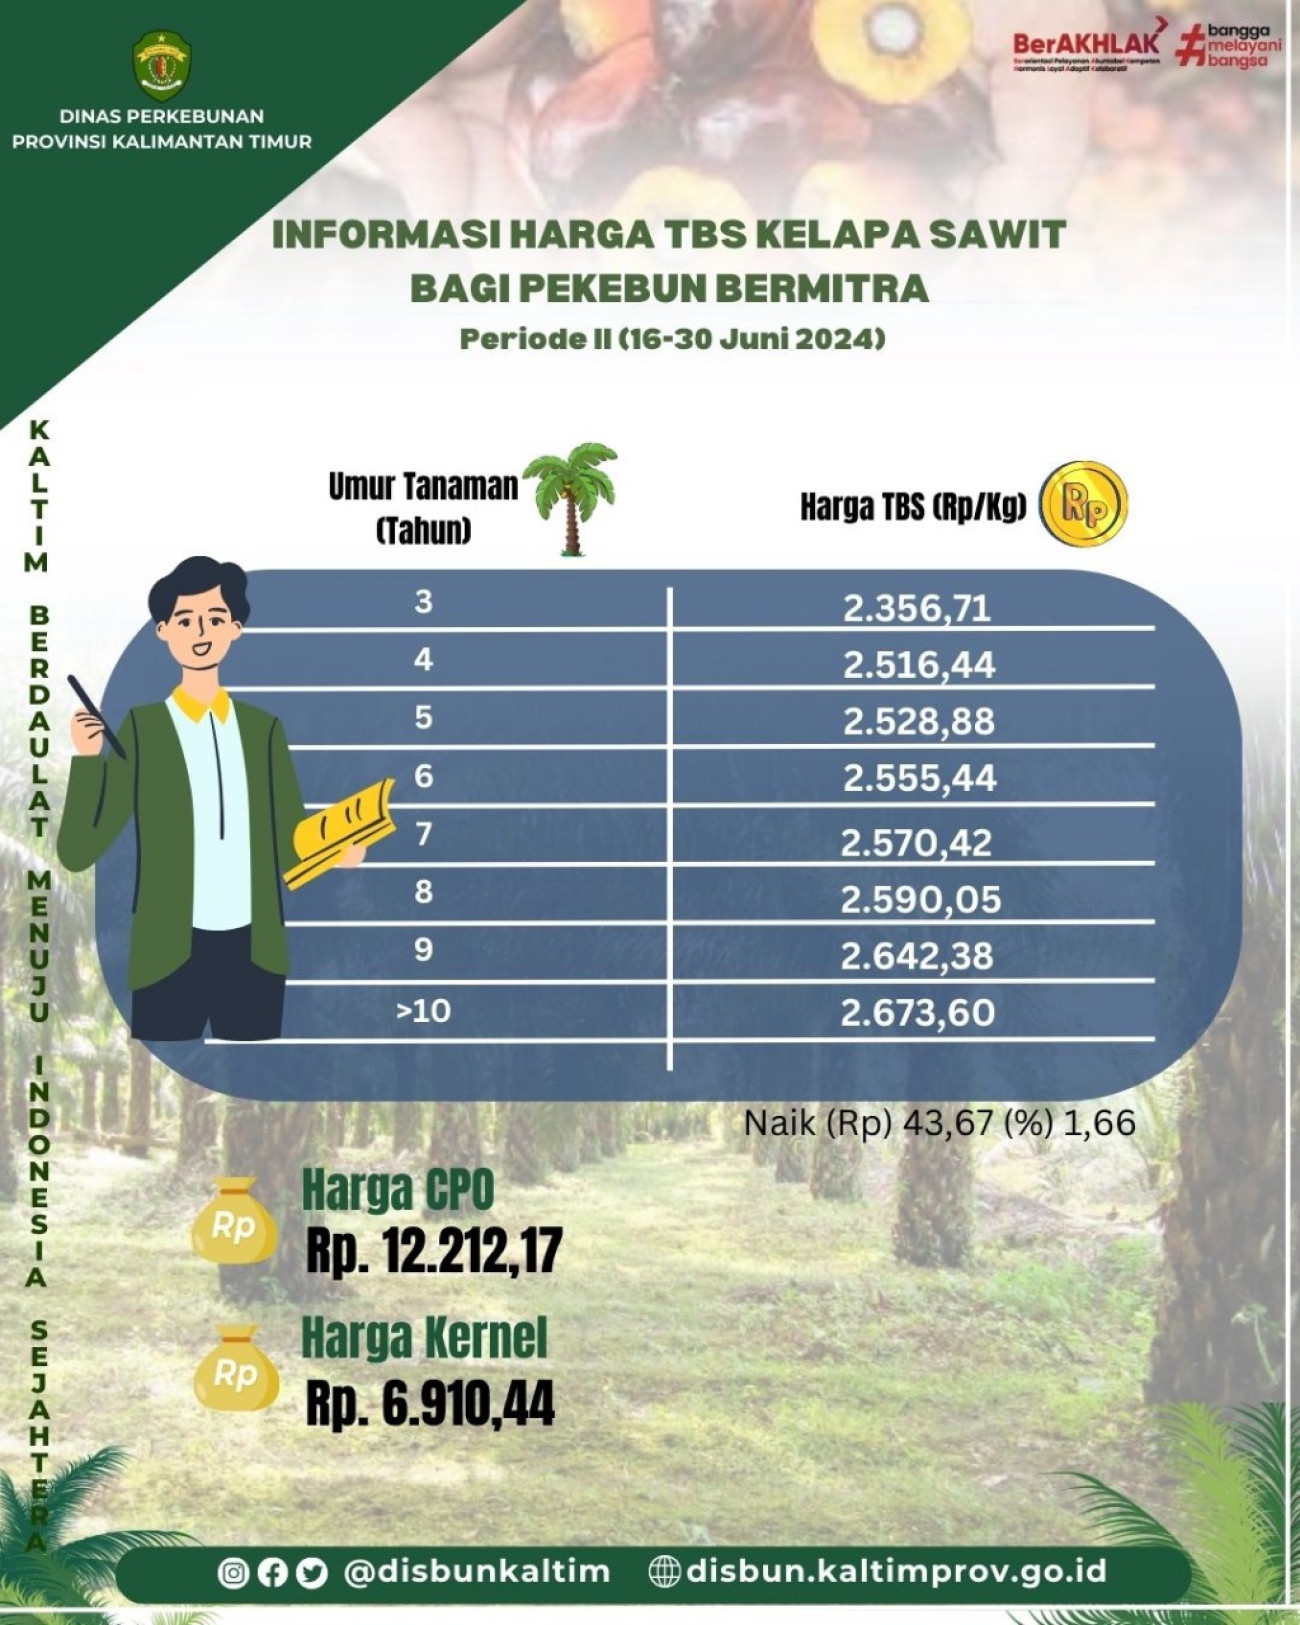 Informasi Harga TBS Kelapa Sawit bagi Pekebun Mitra Periode 2 Bulan Juni 2024